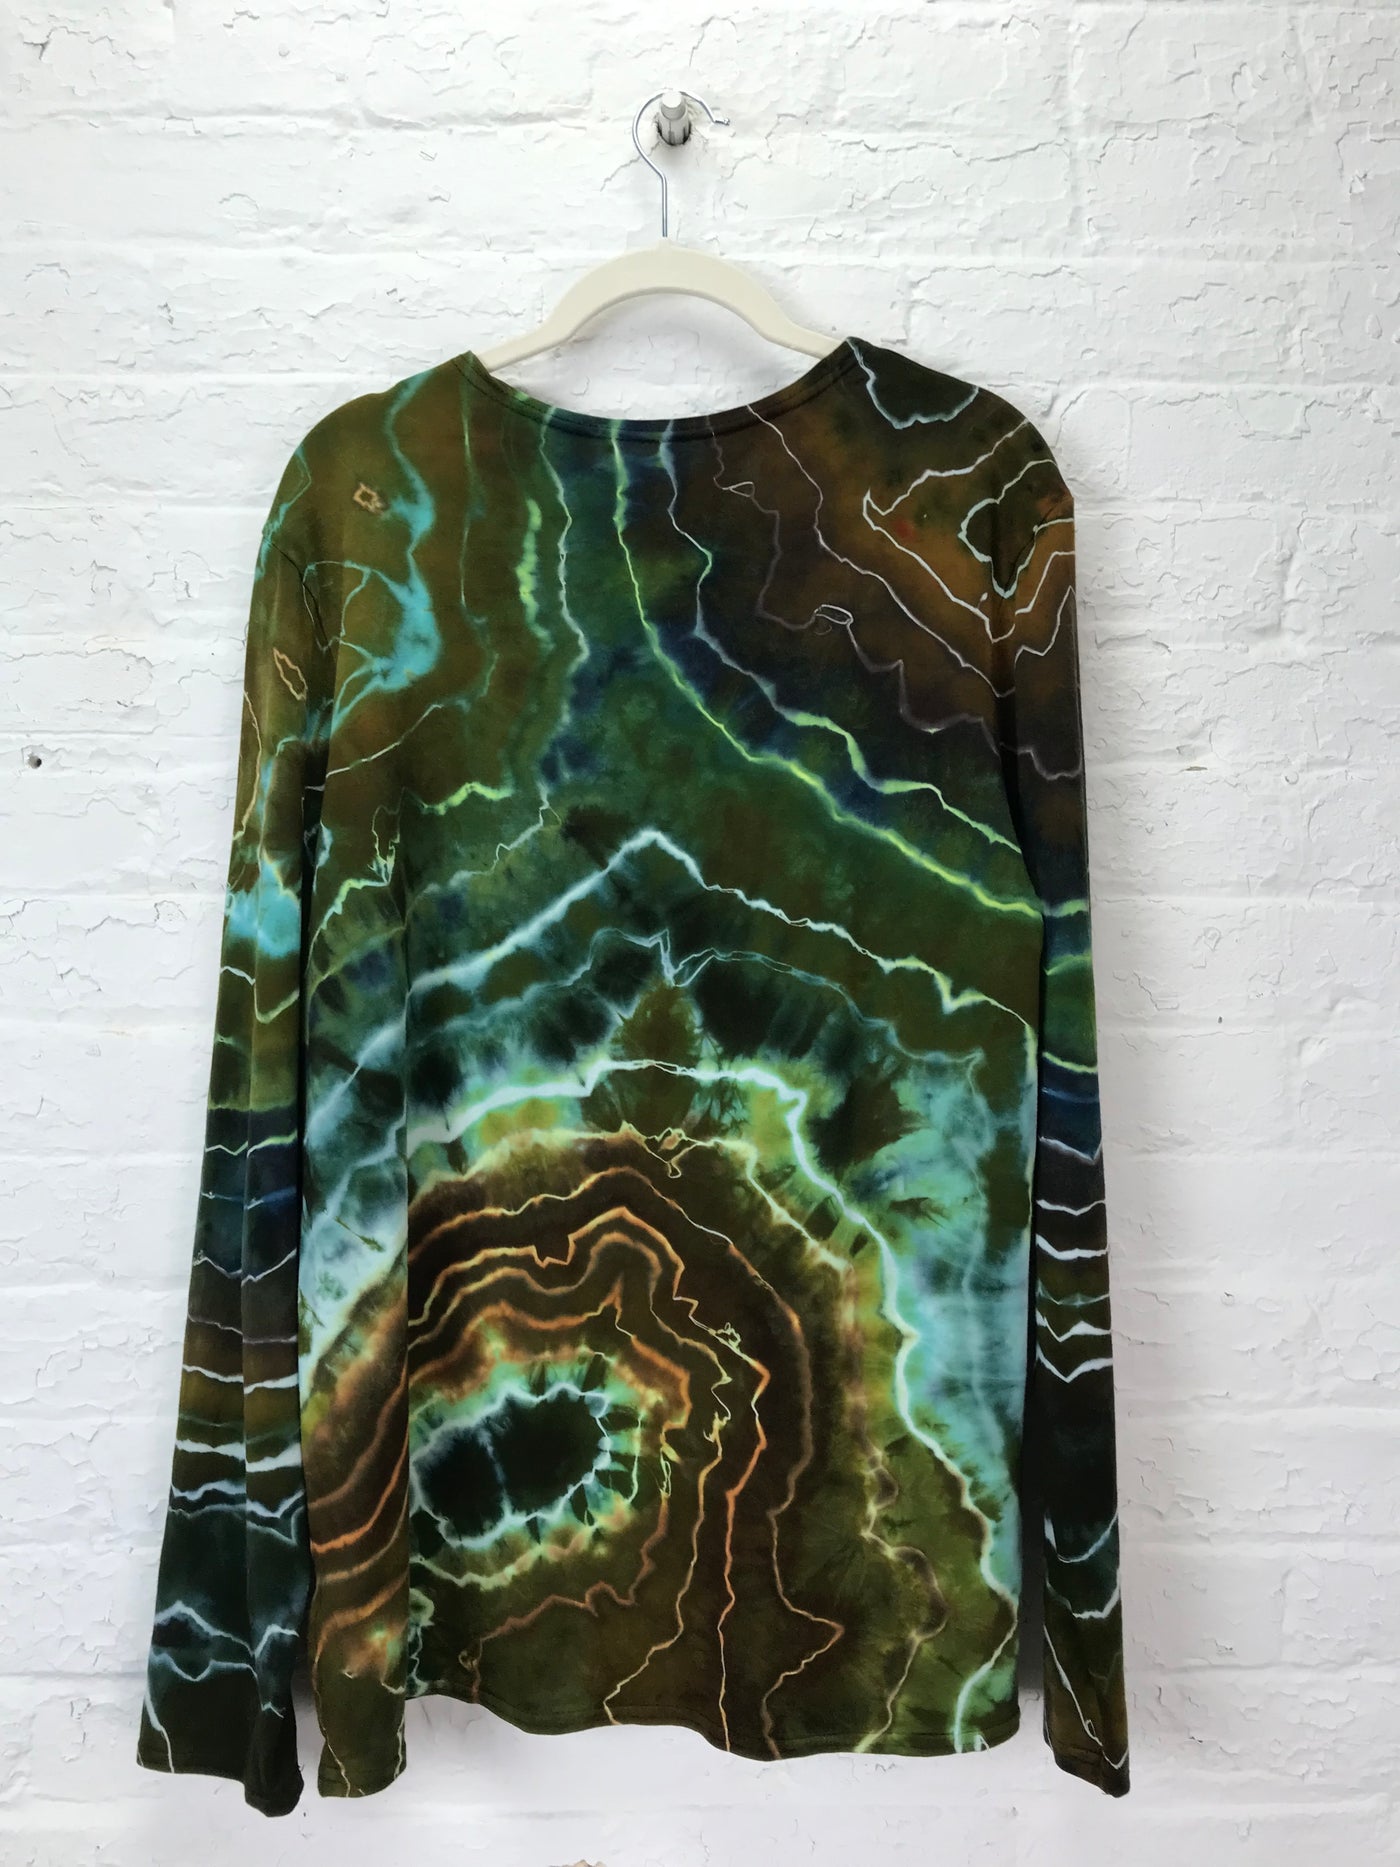 Matthew Long Sleeve Shirt in Moss Geode - Large